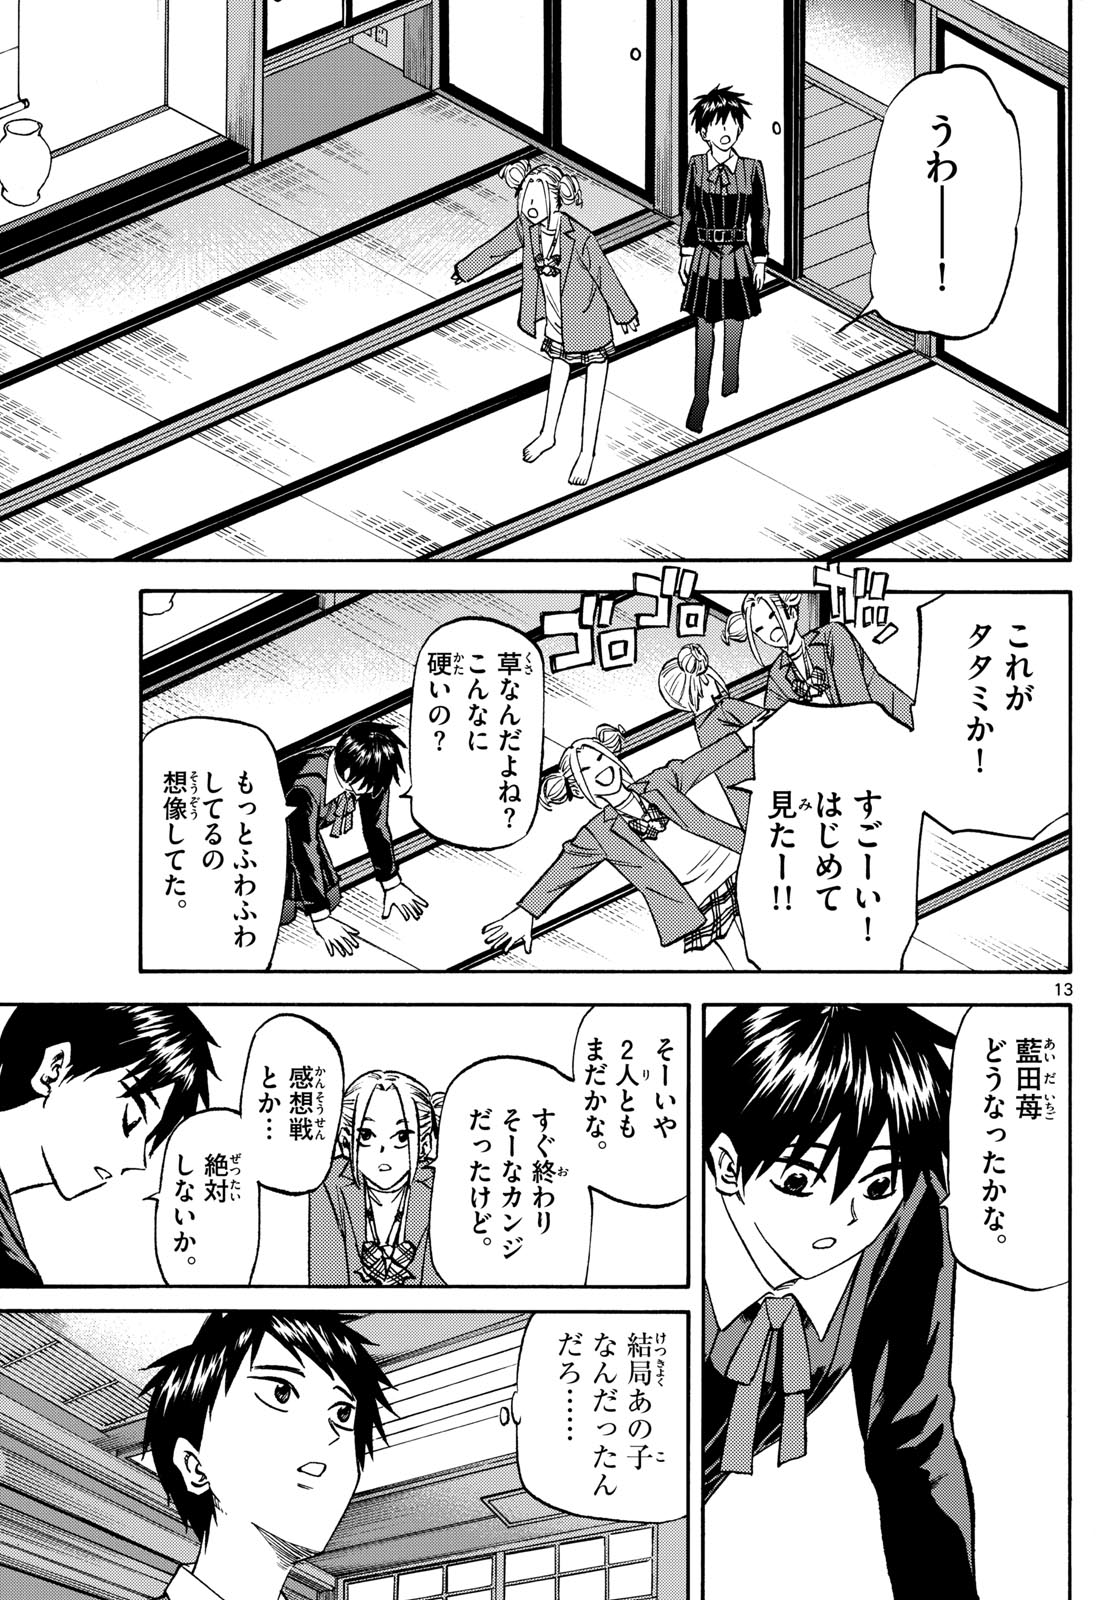 Tatsu to Ichigo - Chapter 183 - Page 13